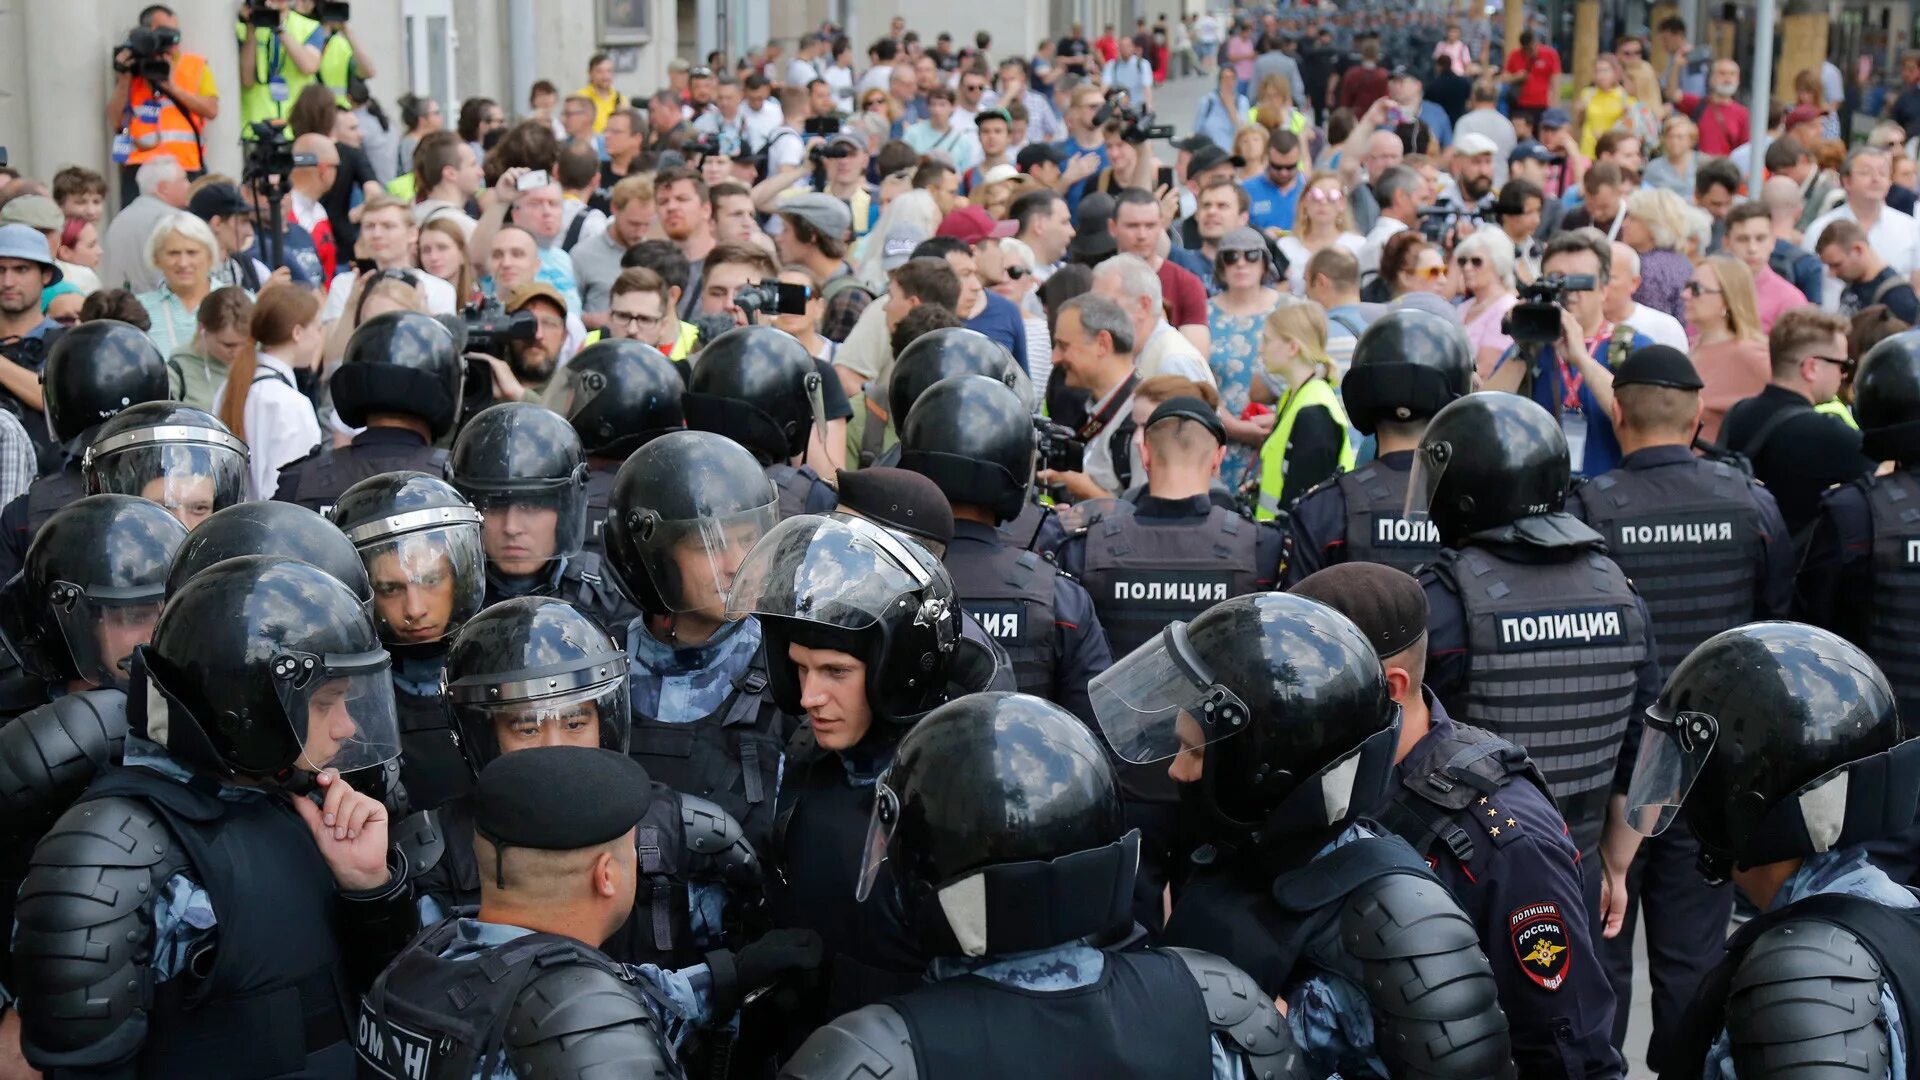 Участники массовых беспорядков. Митинг 27 июля 2019 в Москве. Массовые протесты в России. Массовые беспорядки полиция.